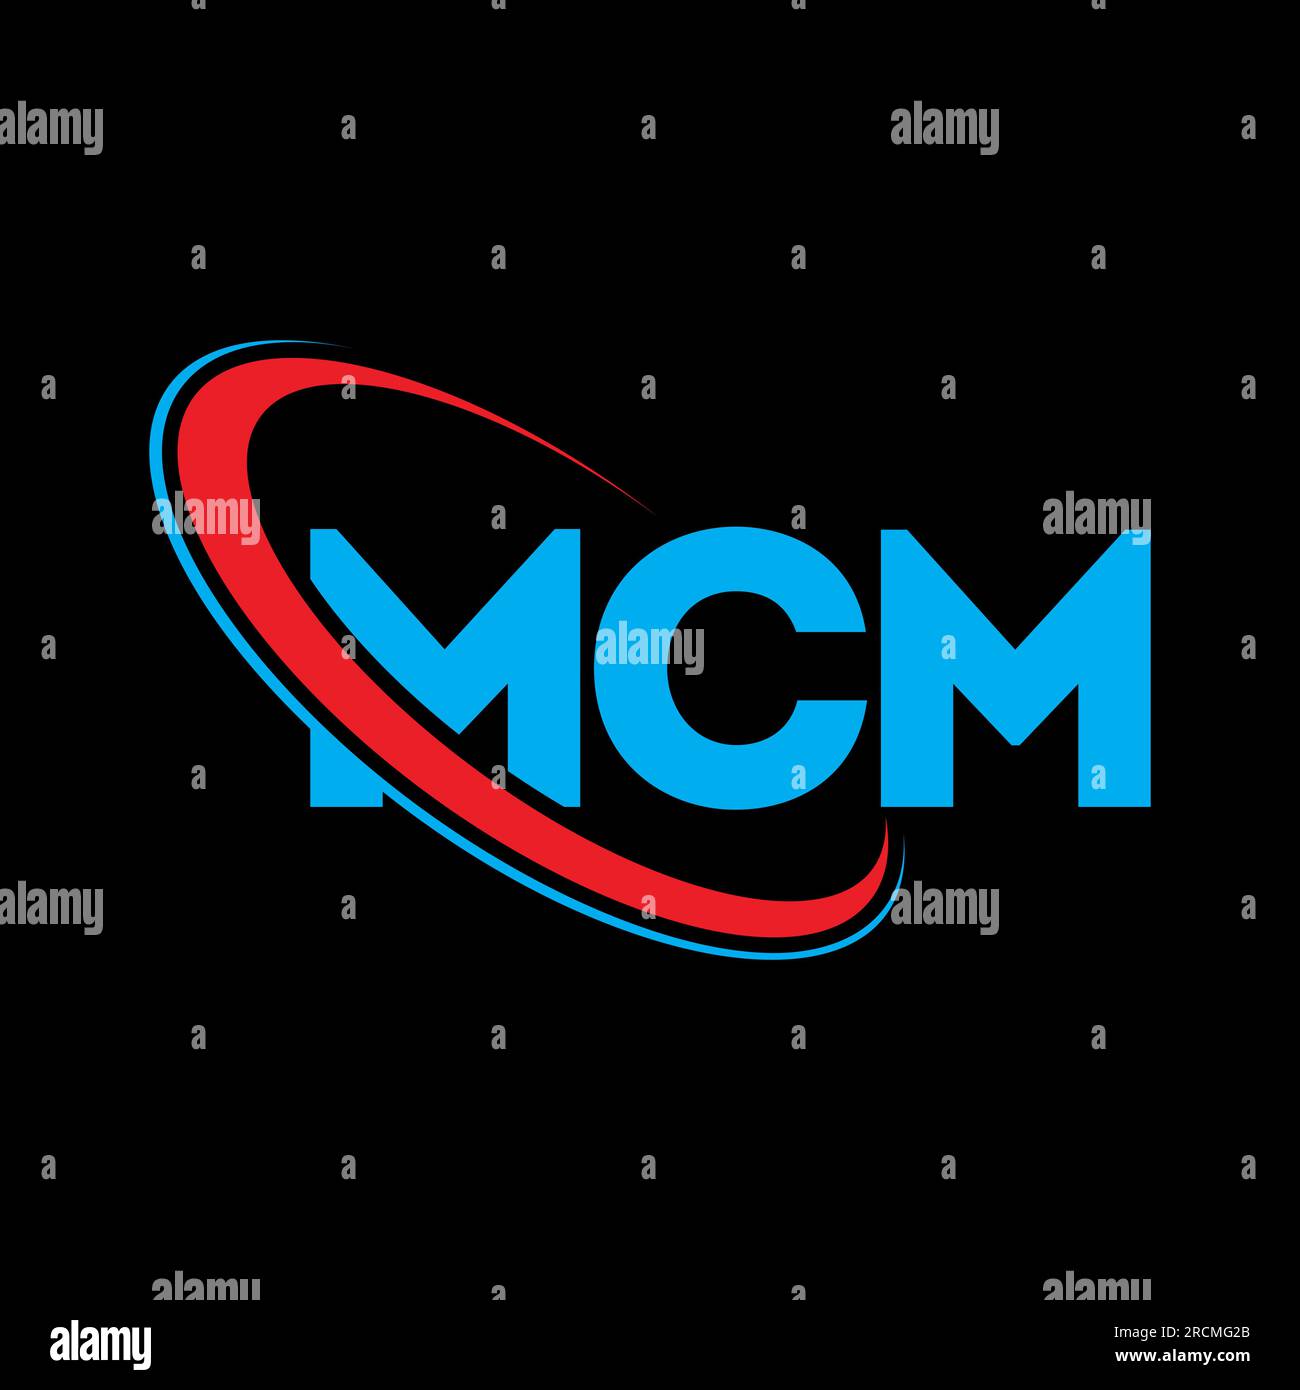 MCM logo. MCM letter. MCM letter logo design. Initials MCM logo linked ...